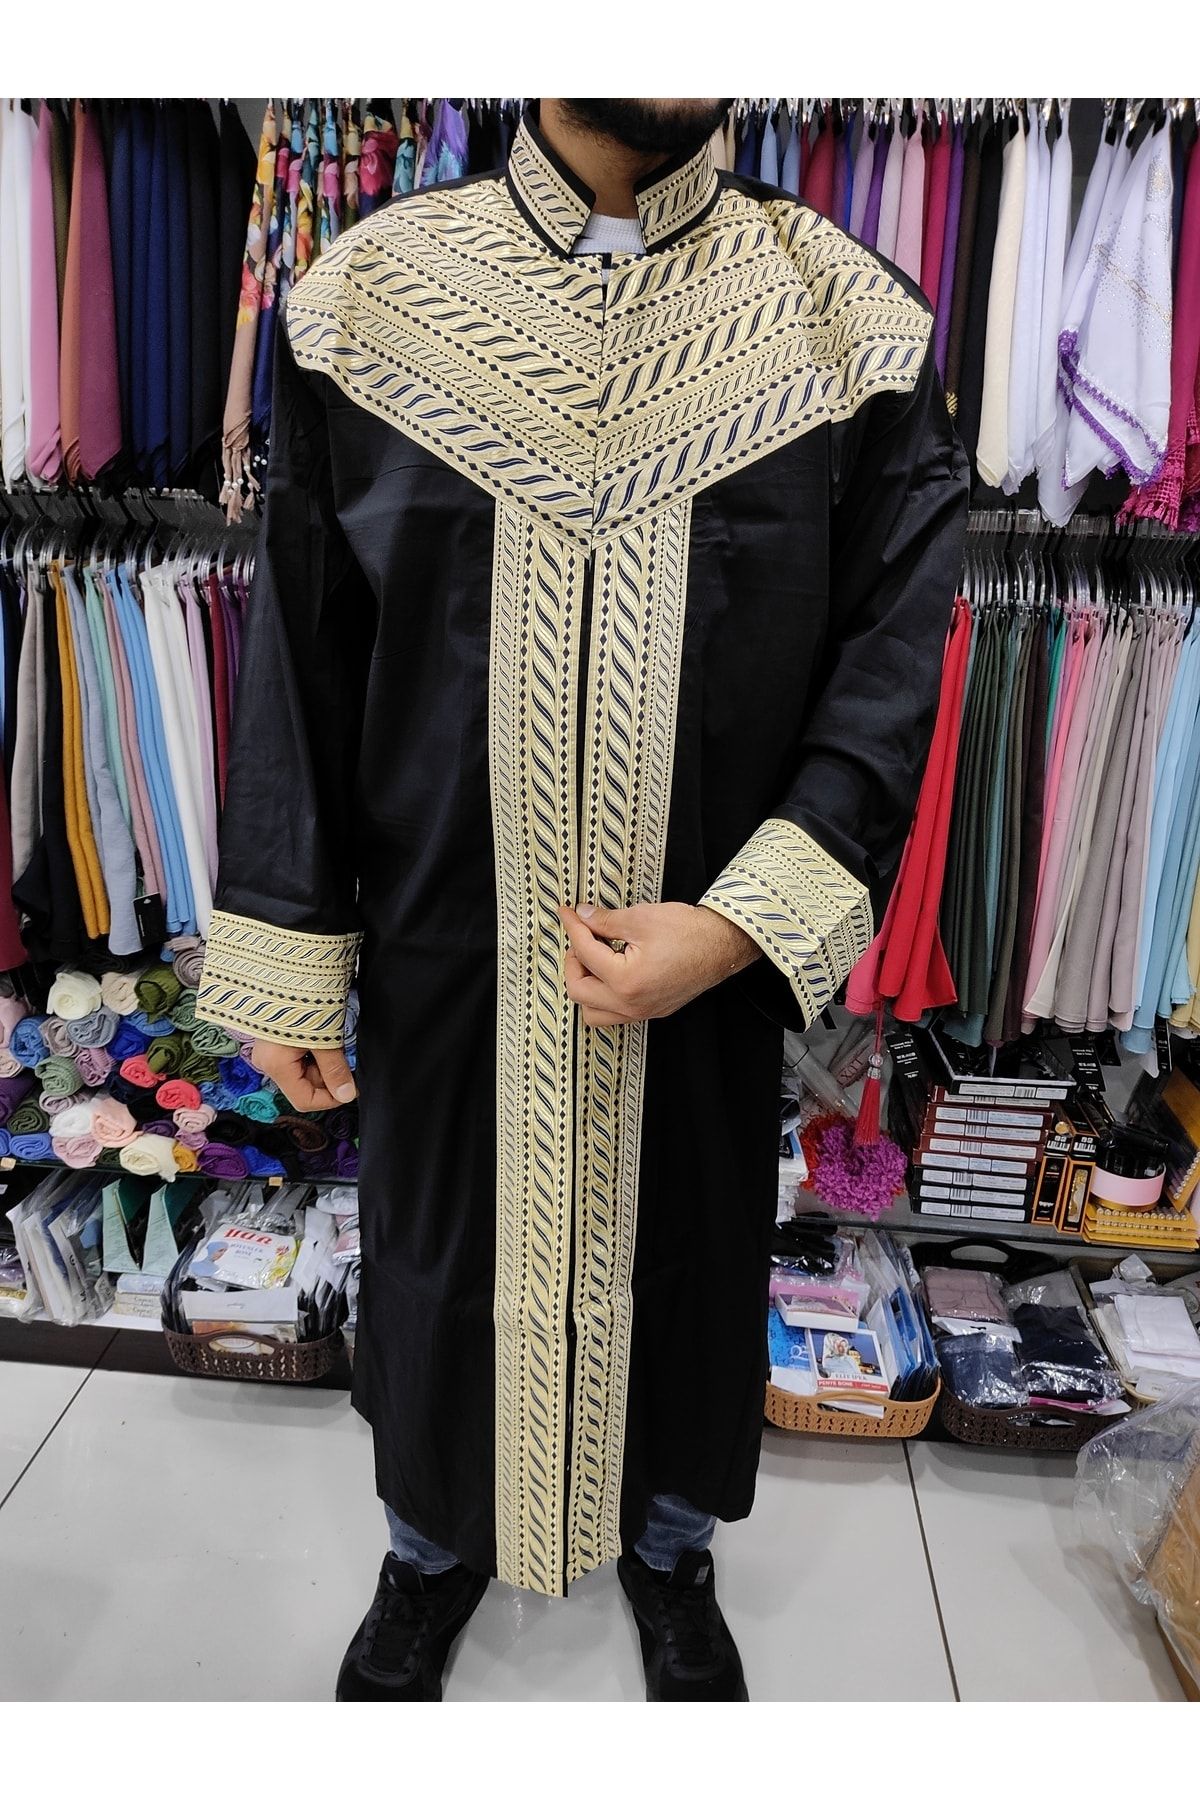 OSMANLI Yoğun Nakış Işlemeli Erkek Namaz Kıyafeti Imam Cübbesi